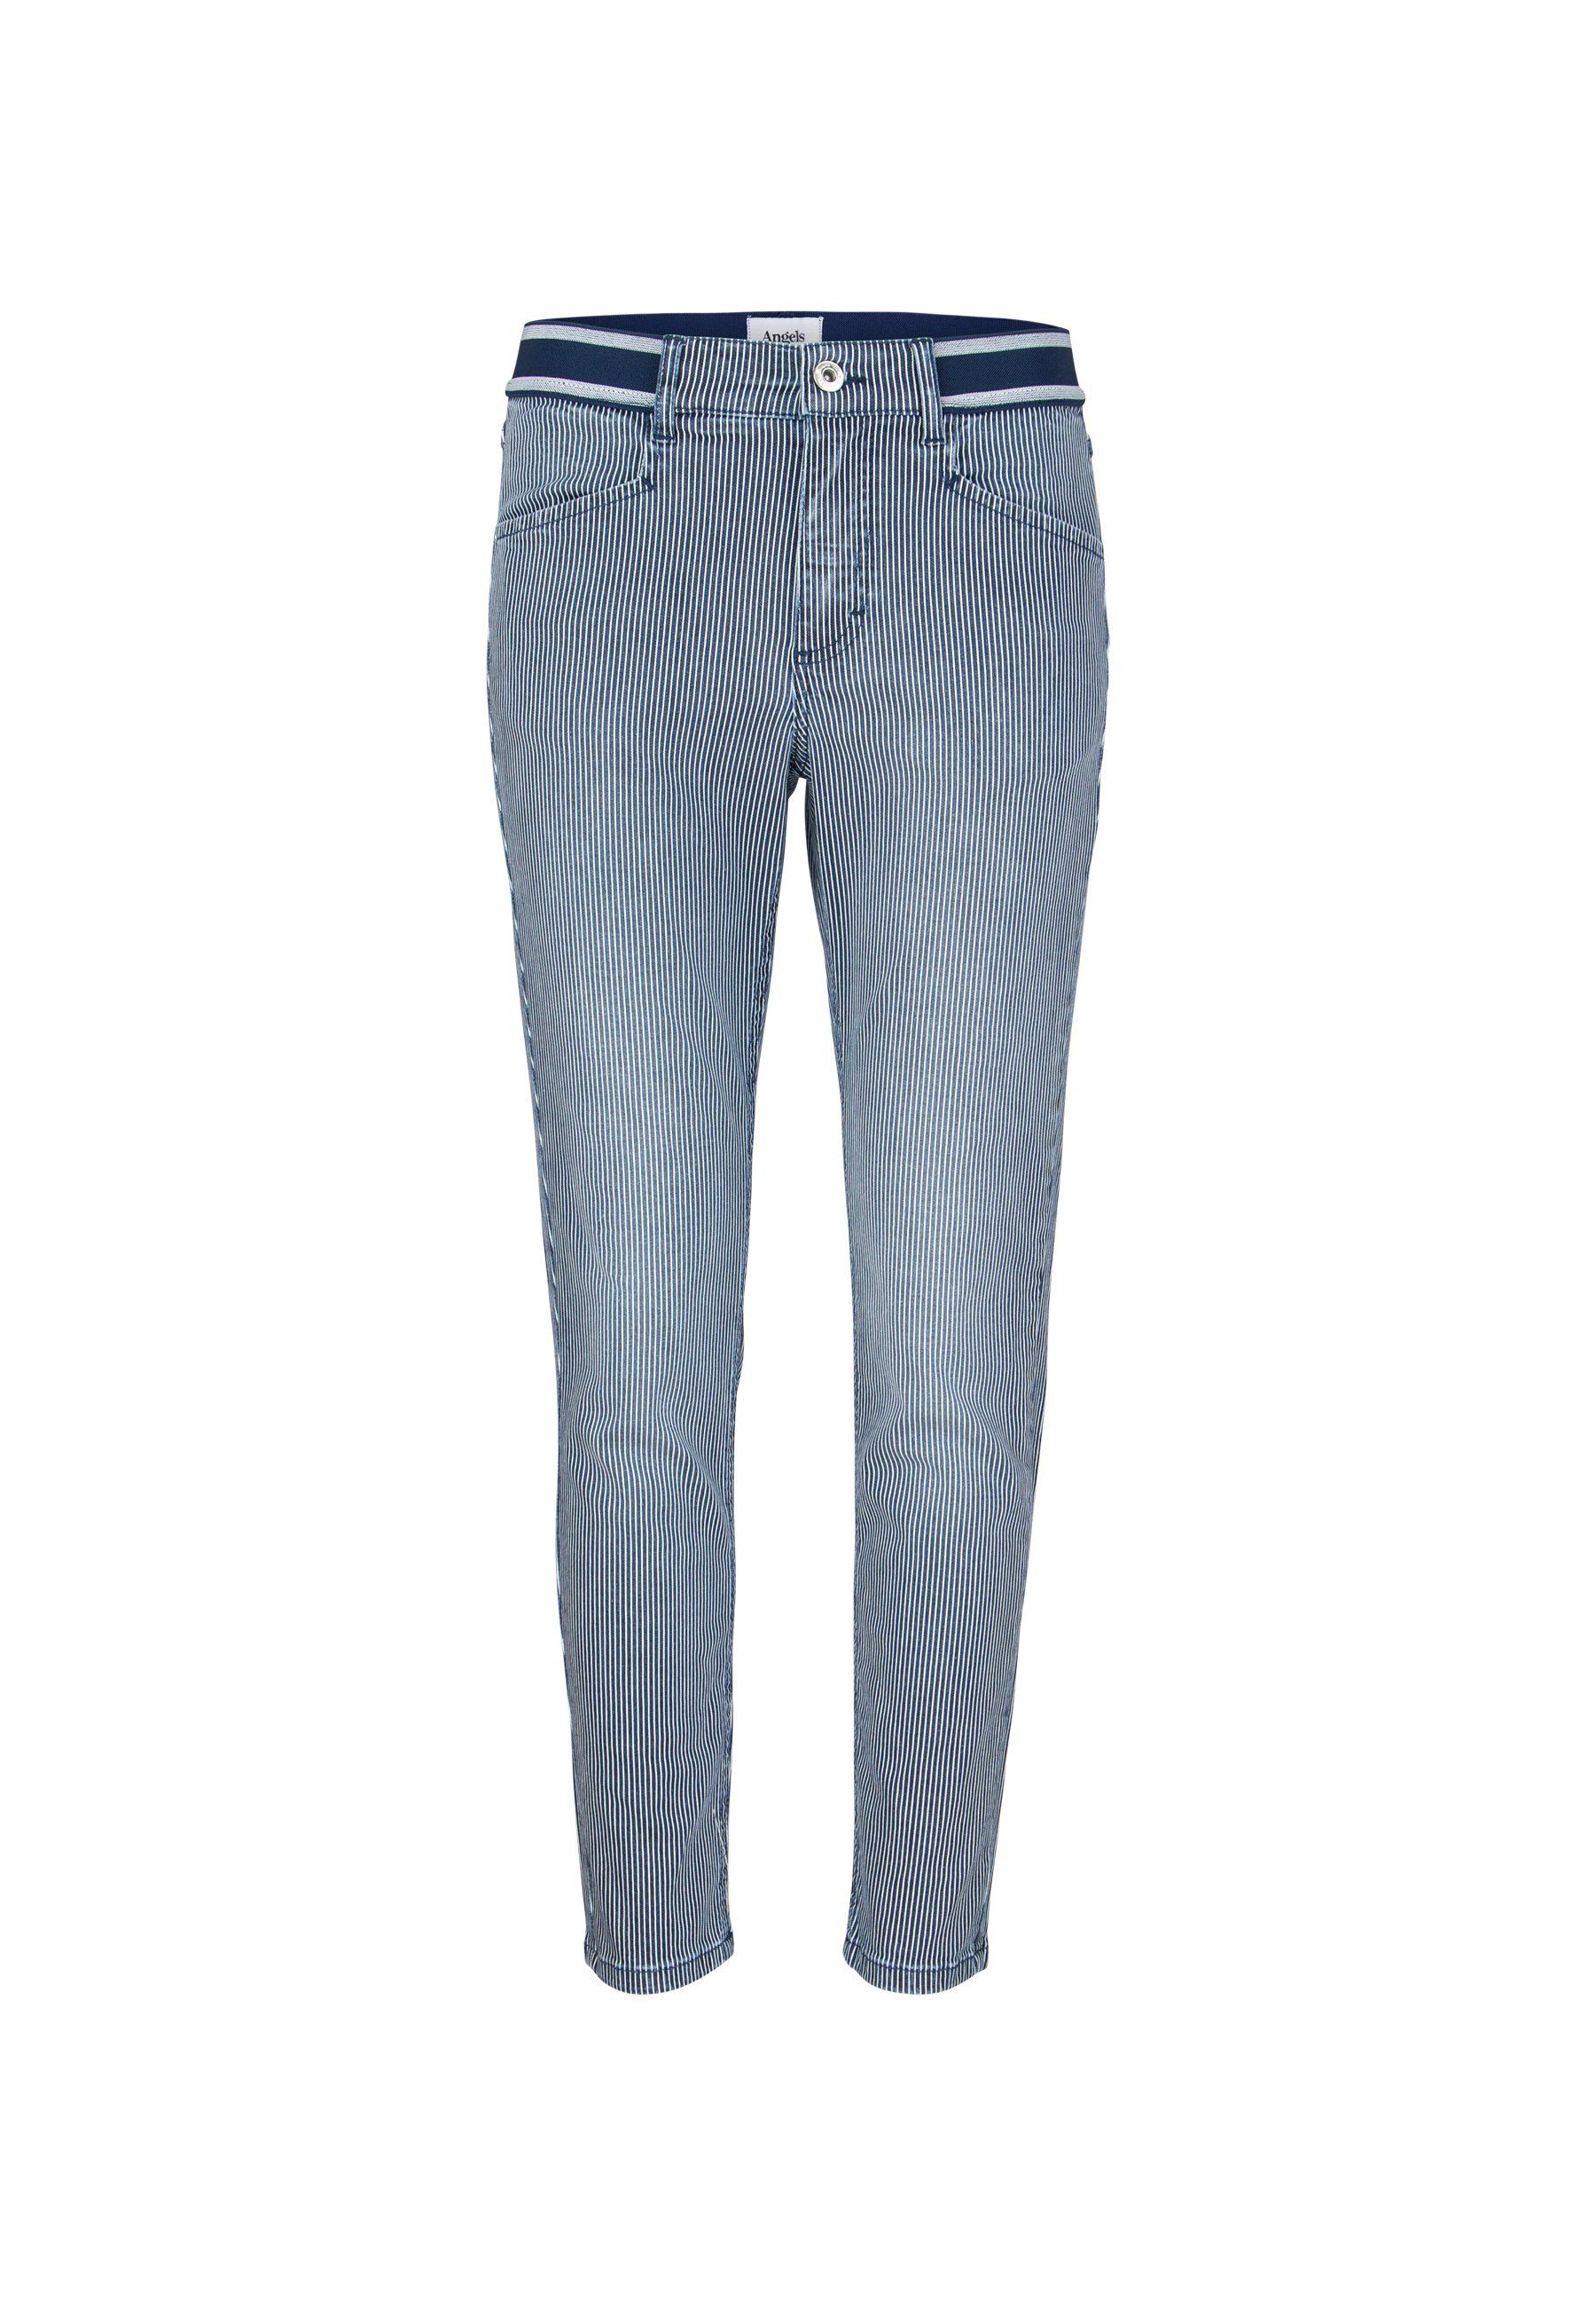 Streifen blue mit Sporty Label-Applikationen Ornella schmalen Jeans ANGELS 7/8-Jeans mit